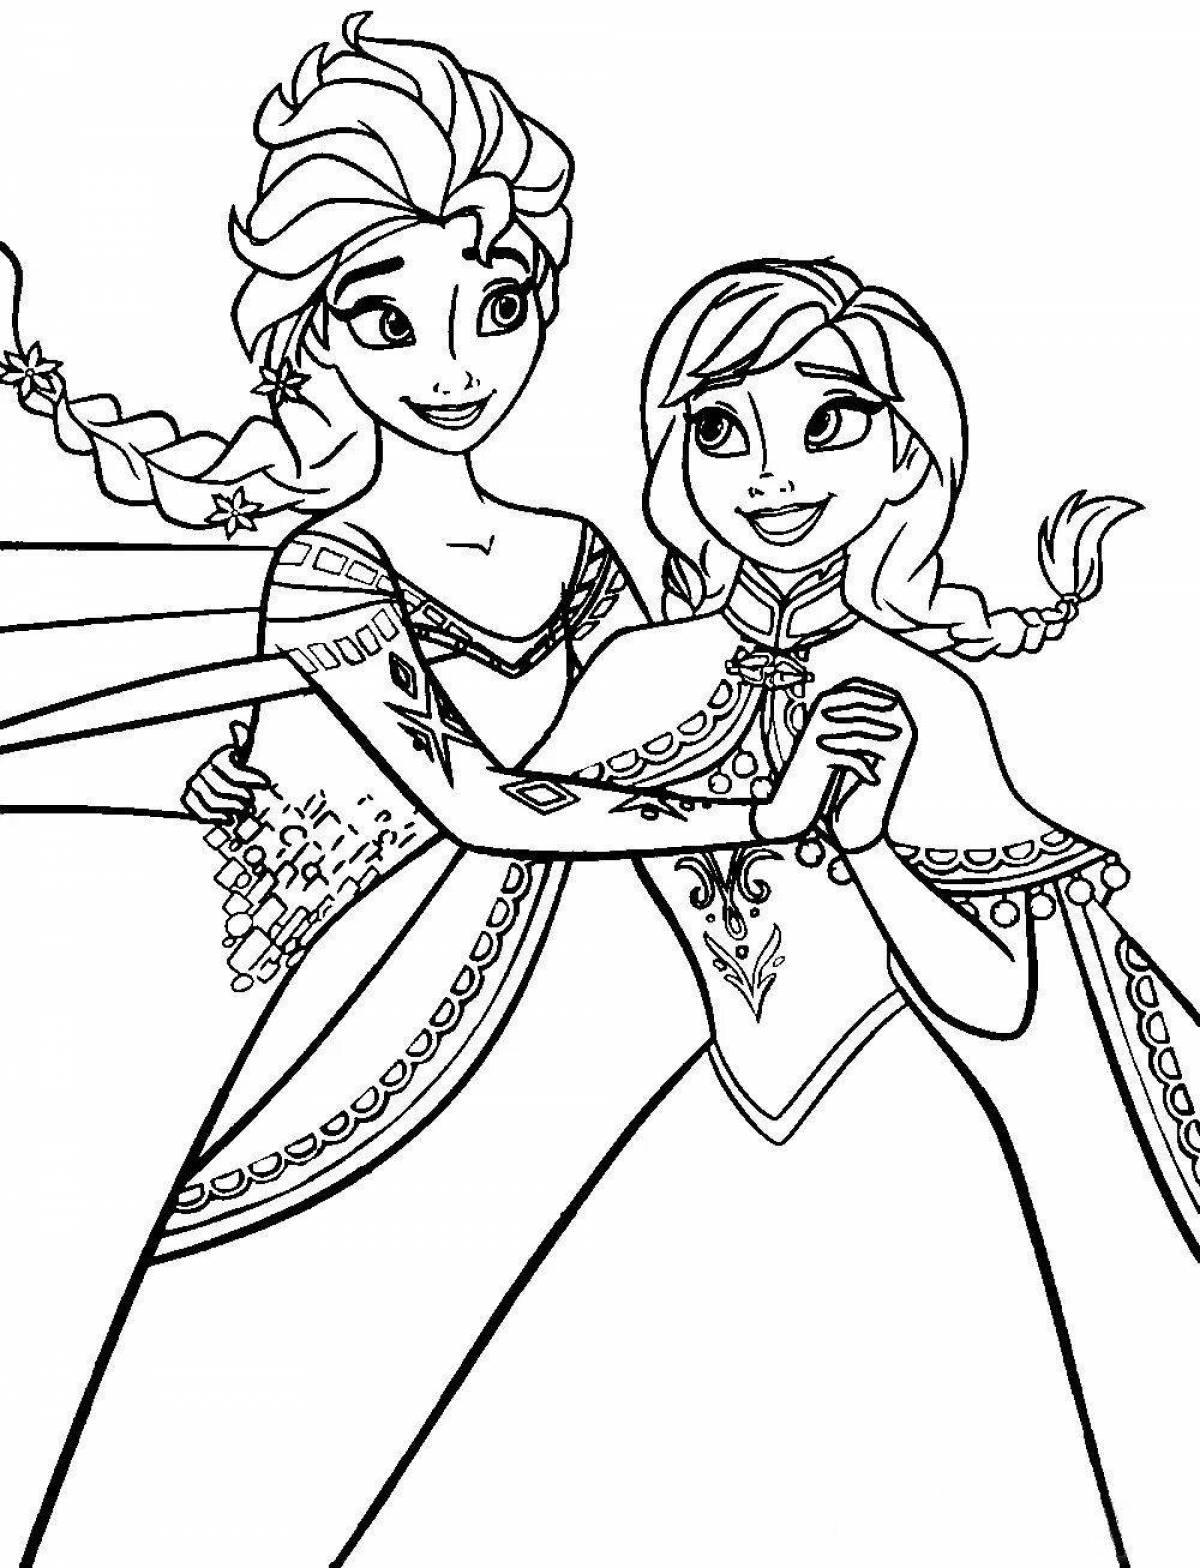 Princess Elsa coloring book for girls